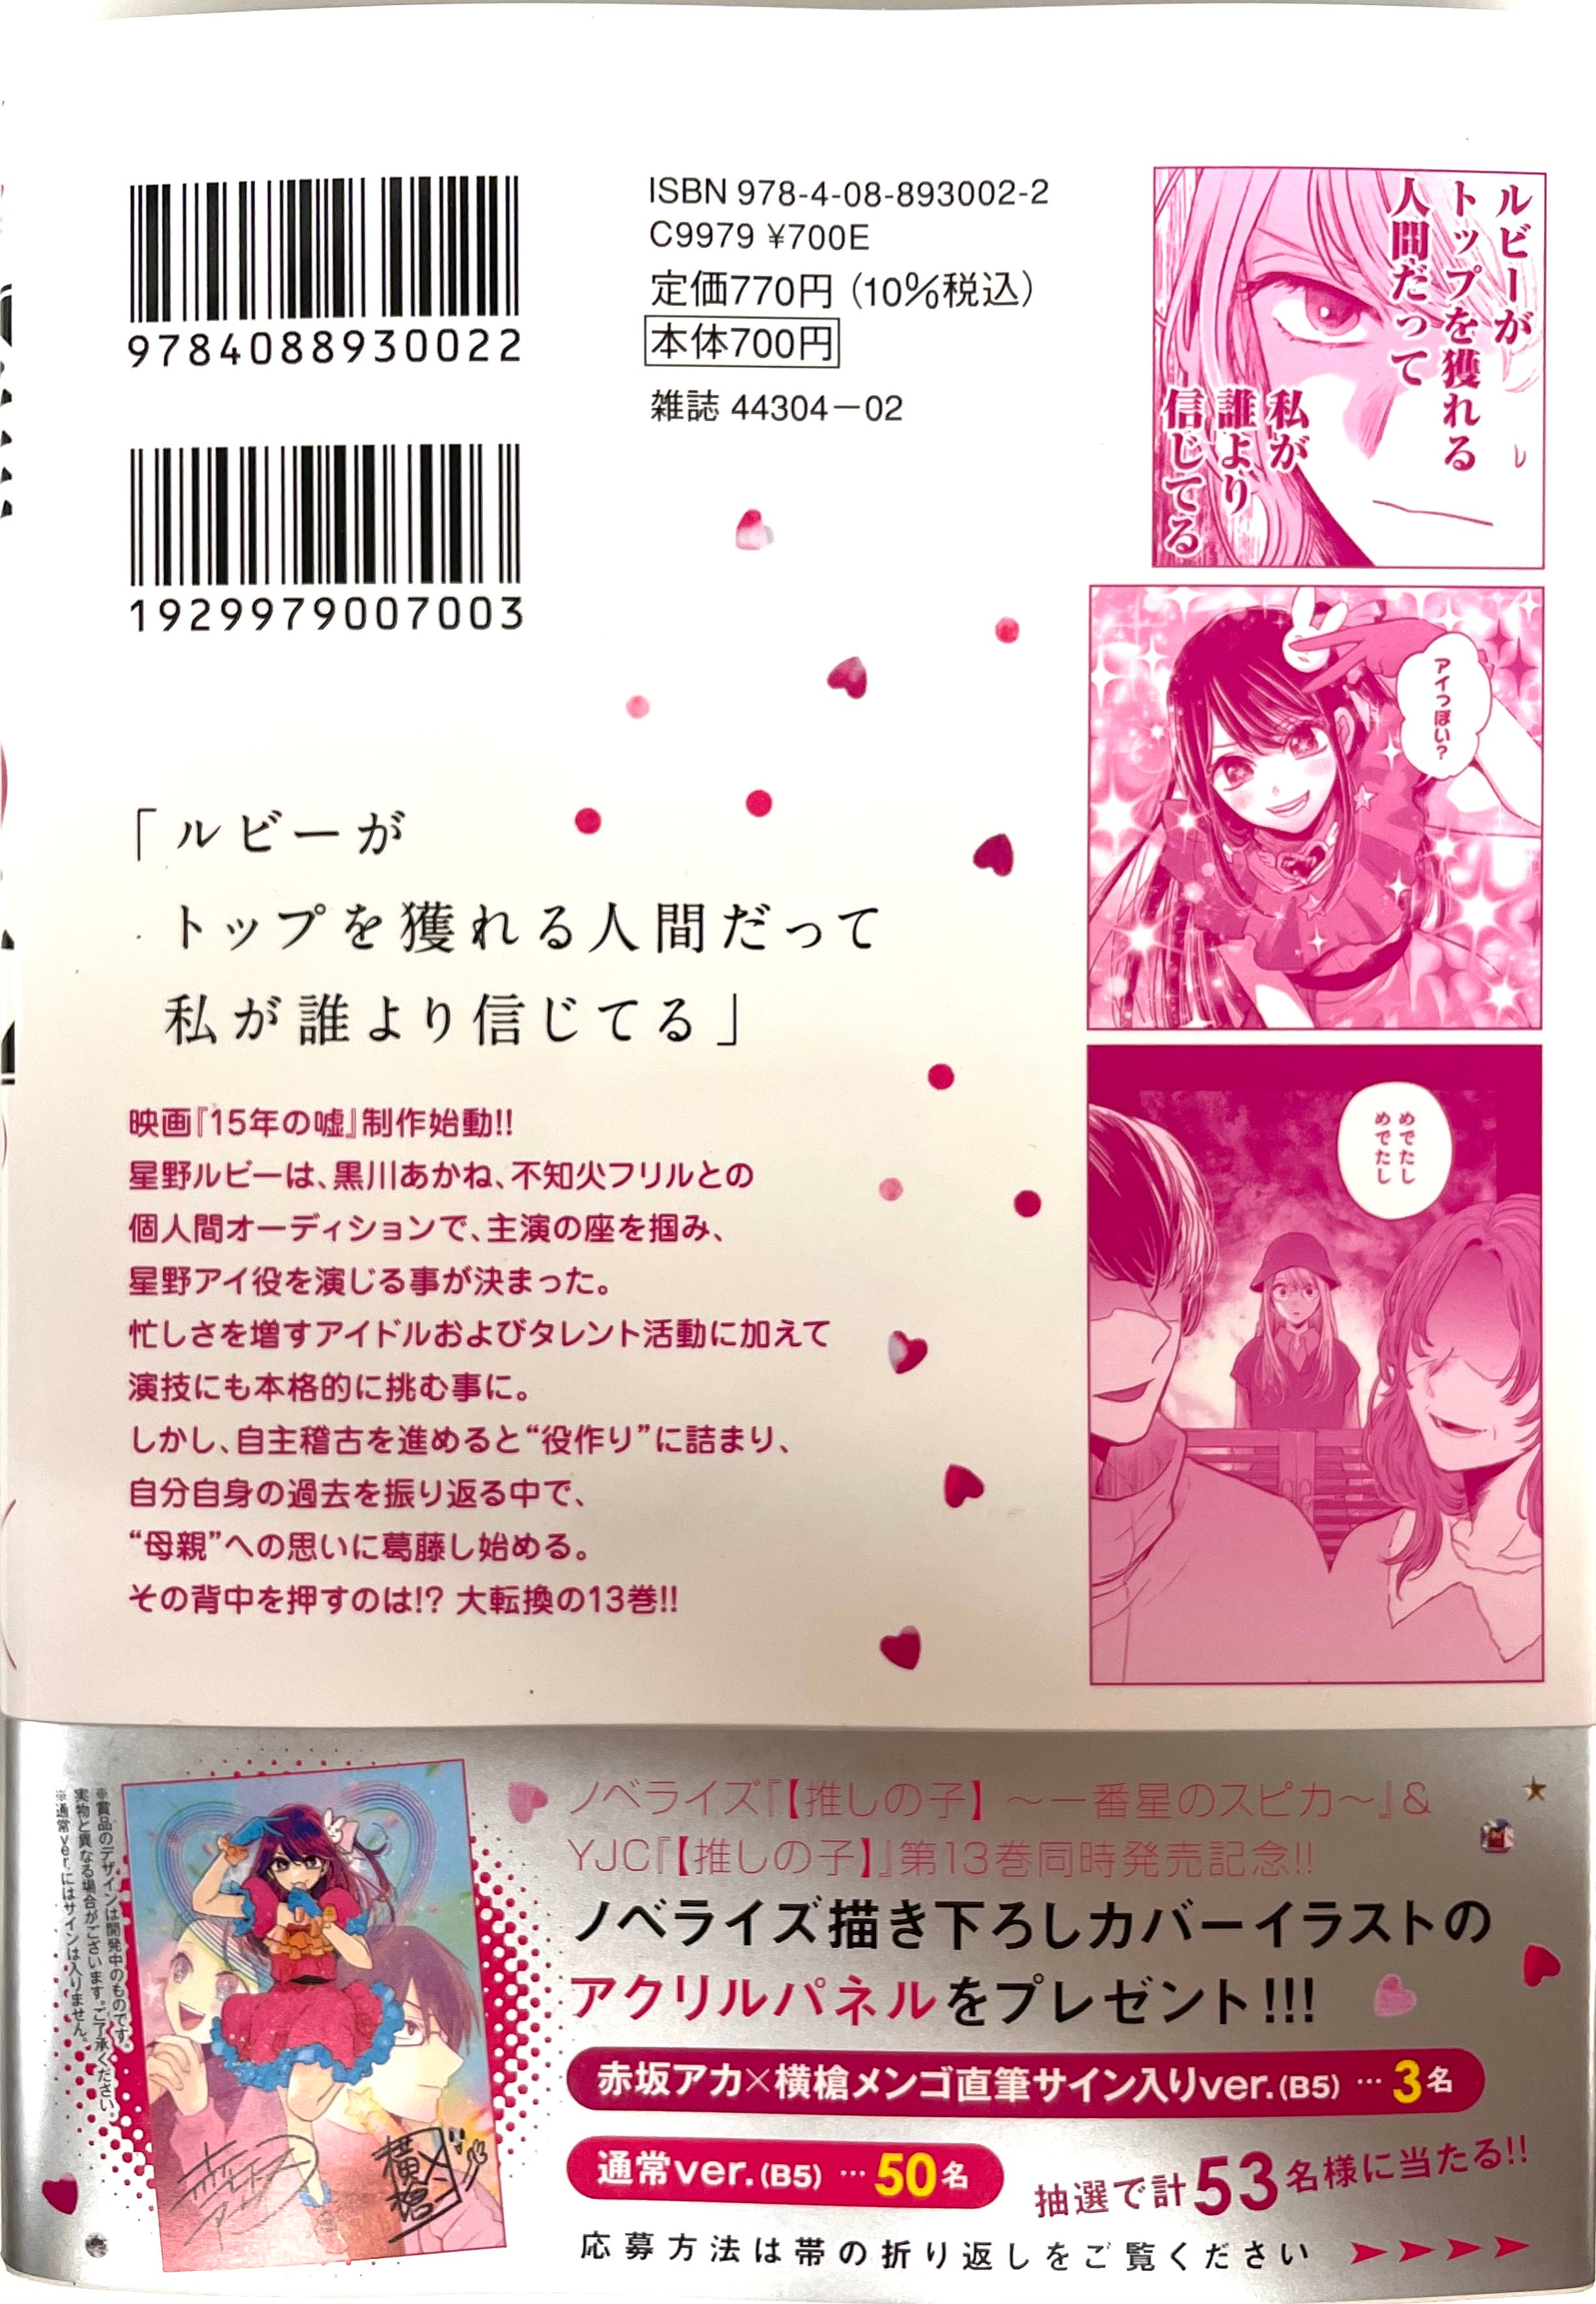 OshInoko Vol.13-Official Japanese Edition | Manga Comic: Buy/Order